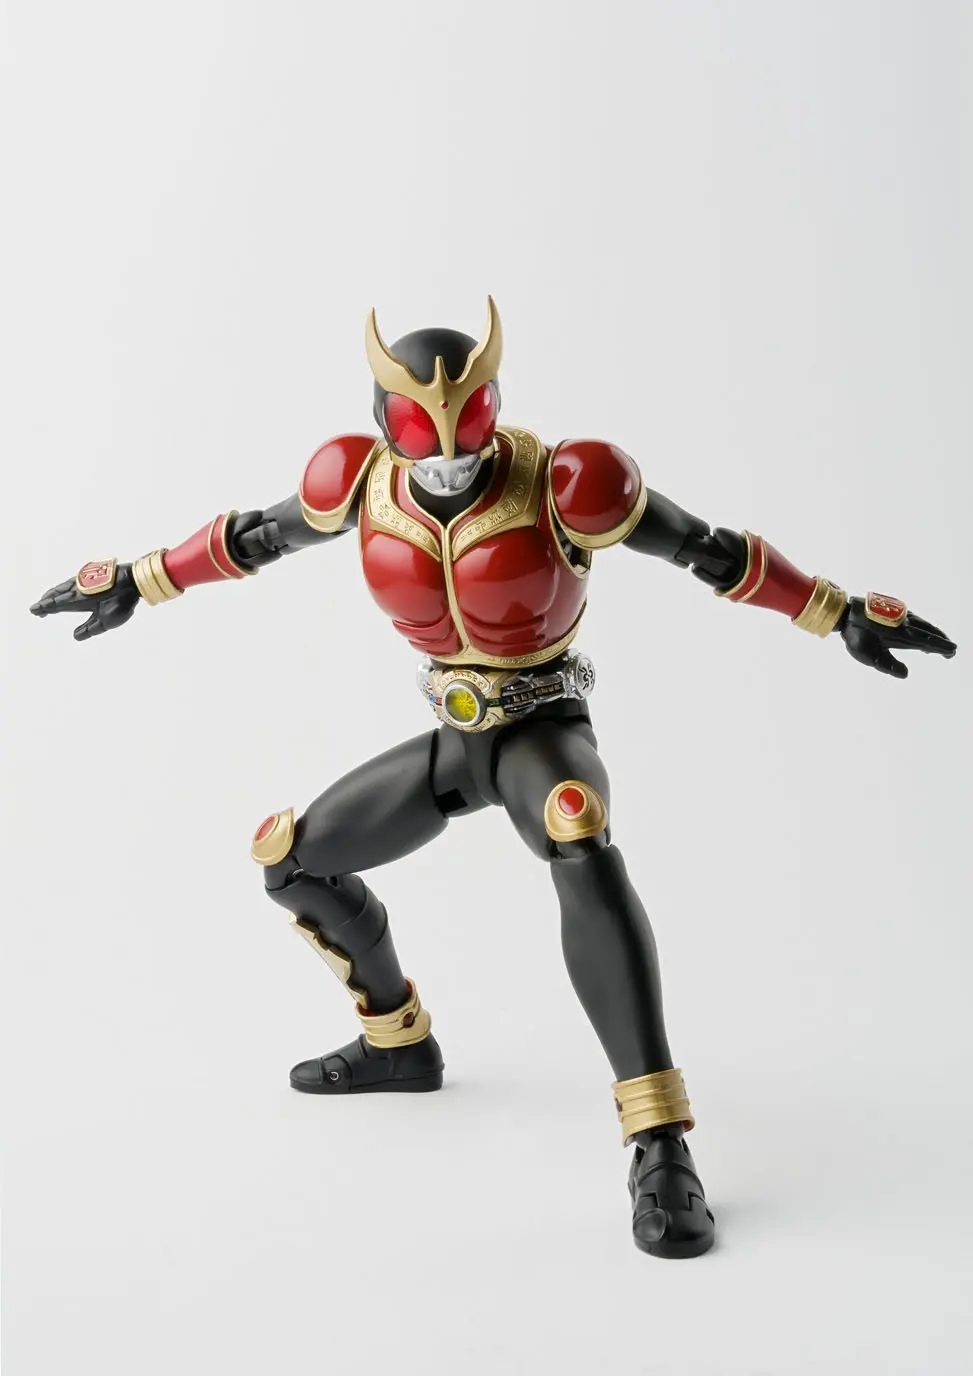 16 см в масках всадник Kuuga Kamen Rider BJD красная фигурка аниме фигурка ПВХ Новая коллекция Фигурки игрушки